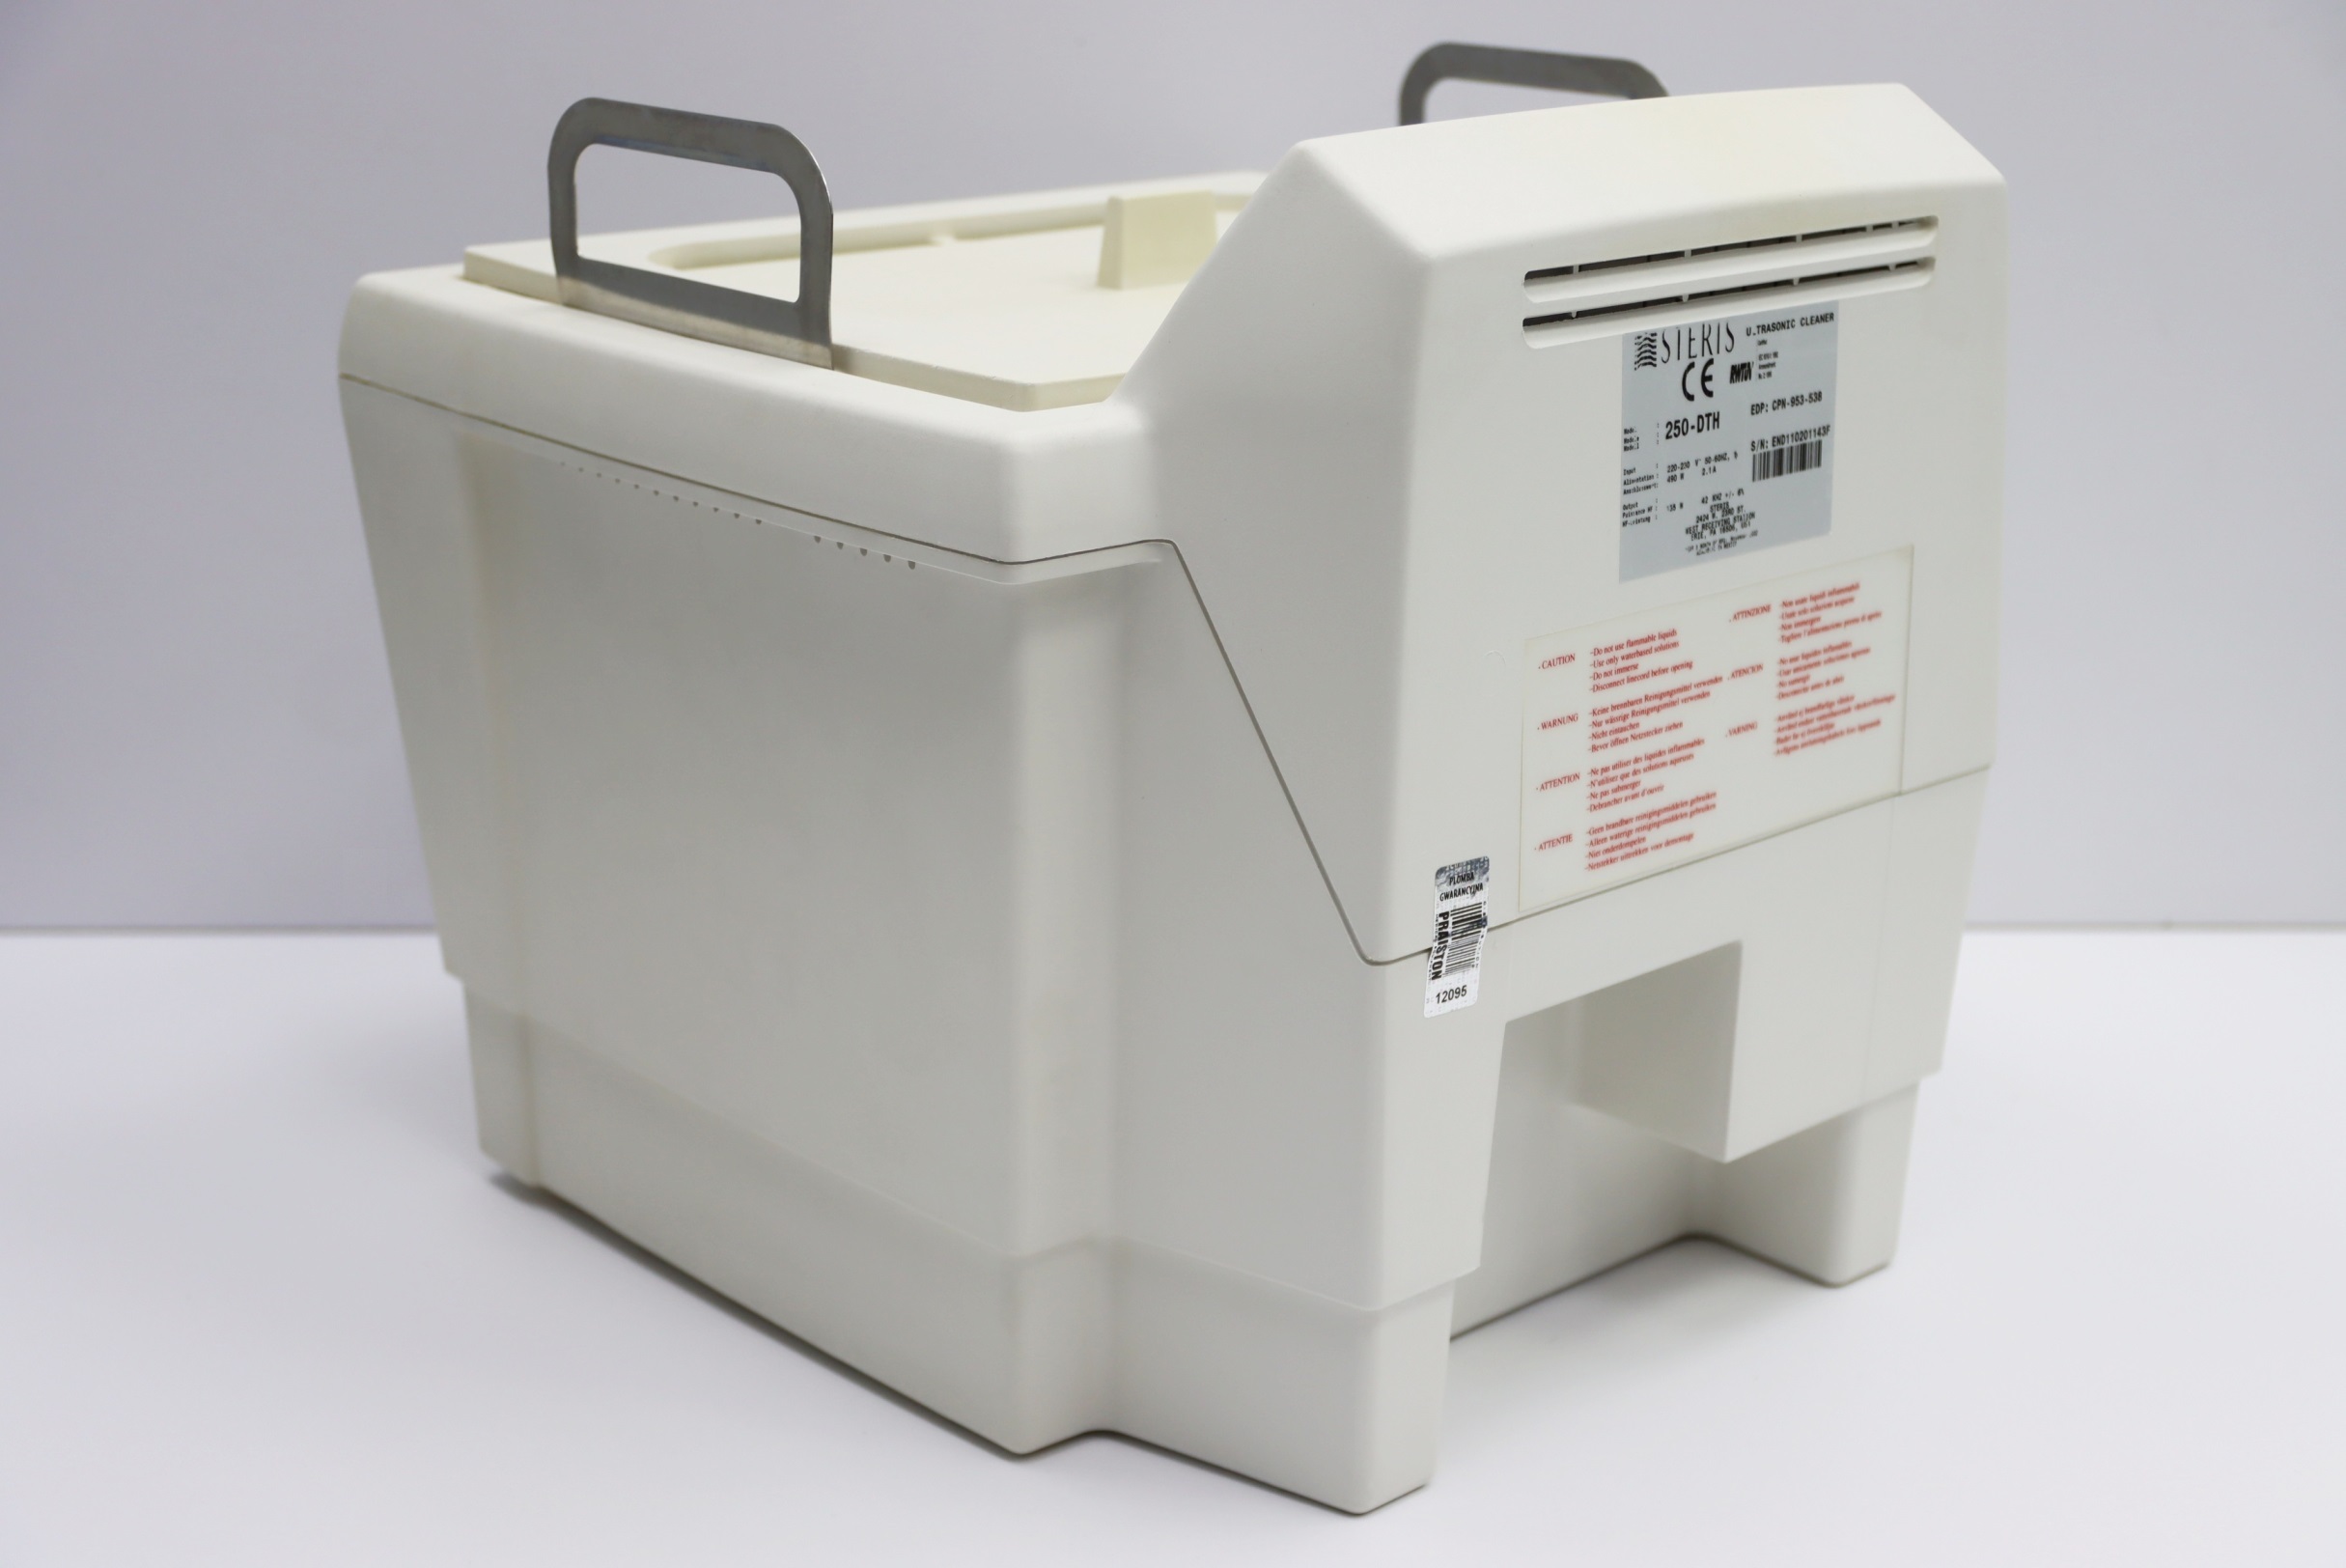 Myjnie ultradźwiękowe używane STERIS AMSCO SONIC 250-DTH - Praiston rekondycjonowany